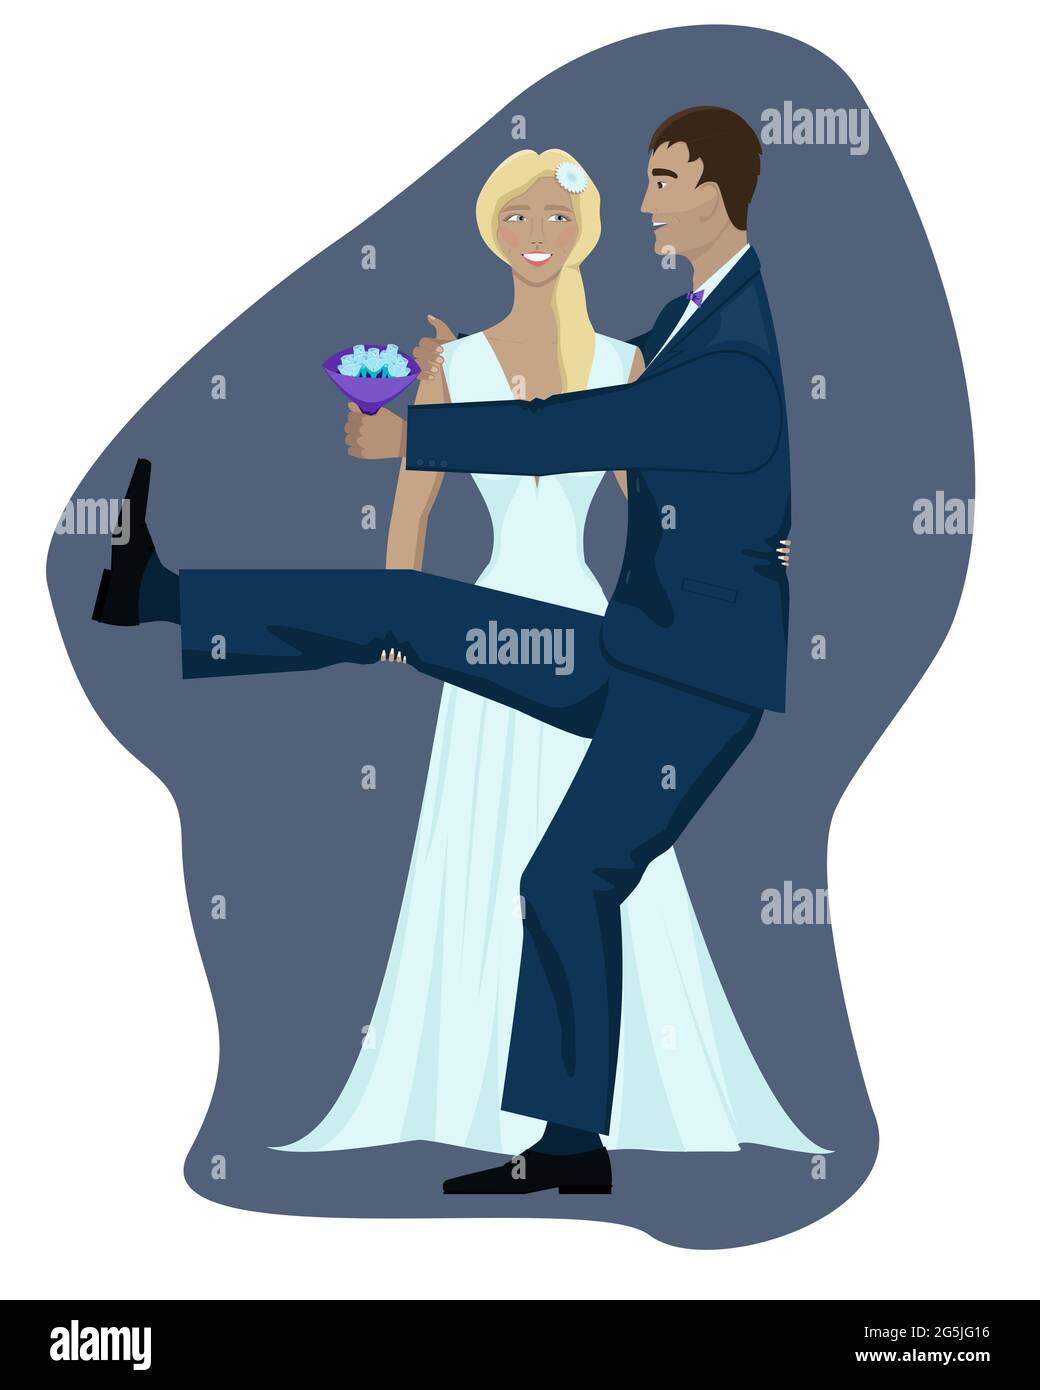 Isoliertes Bild von Braut und Bräutigam auf violettem und weißem Hintergrund. Das Brautpaar macht Spaß und macht Spaß, die Braut will den Bräutigam in die Arme nehmen Stock Vektor